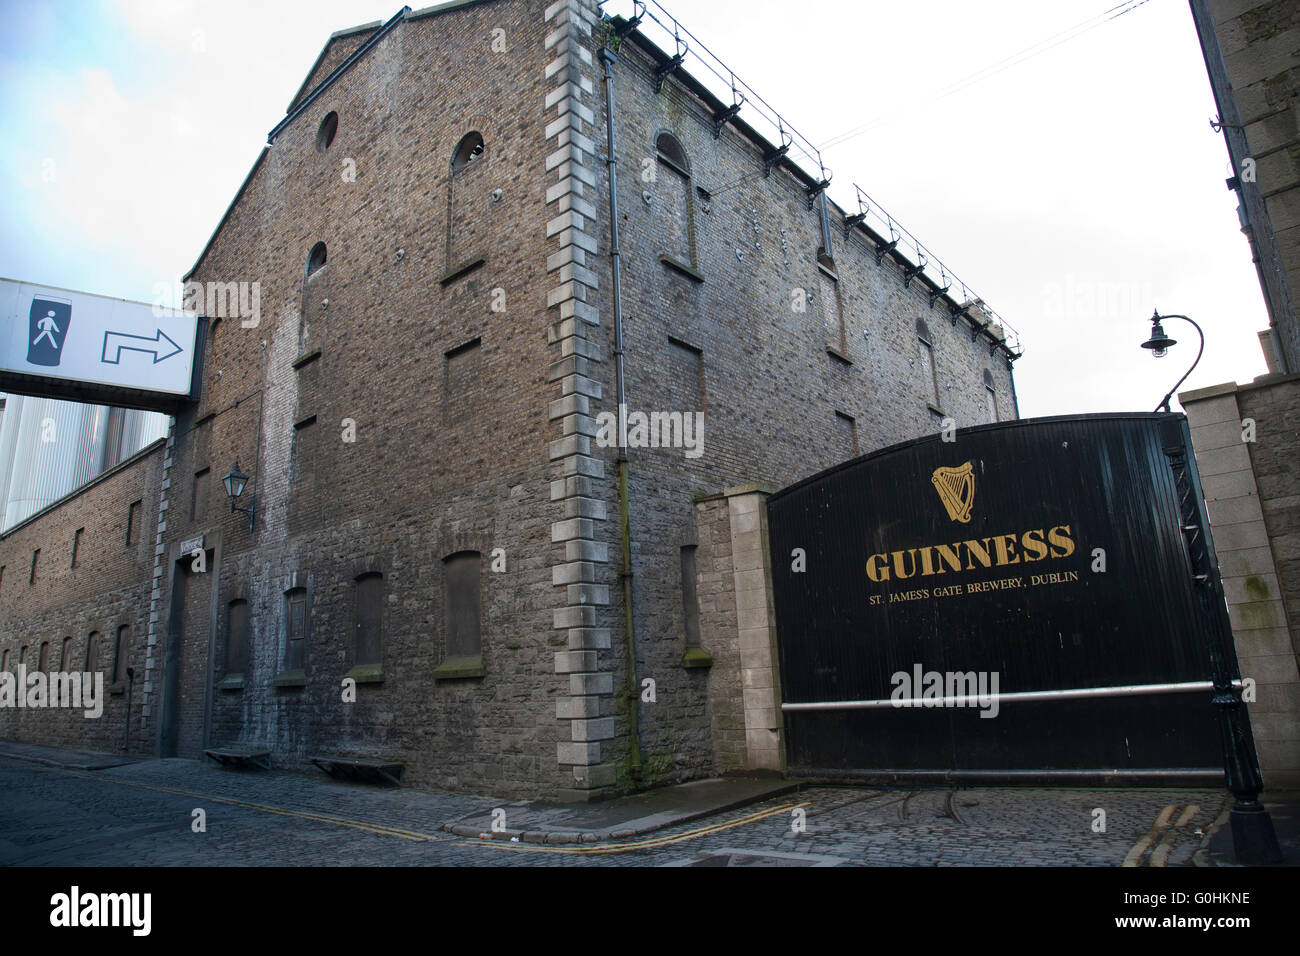 Original gepflasterten Straßen außerhalb der Brauerei Guinness Storehouse in Dublin Irland Stockfoto